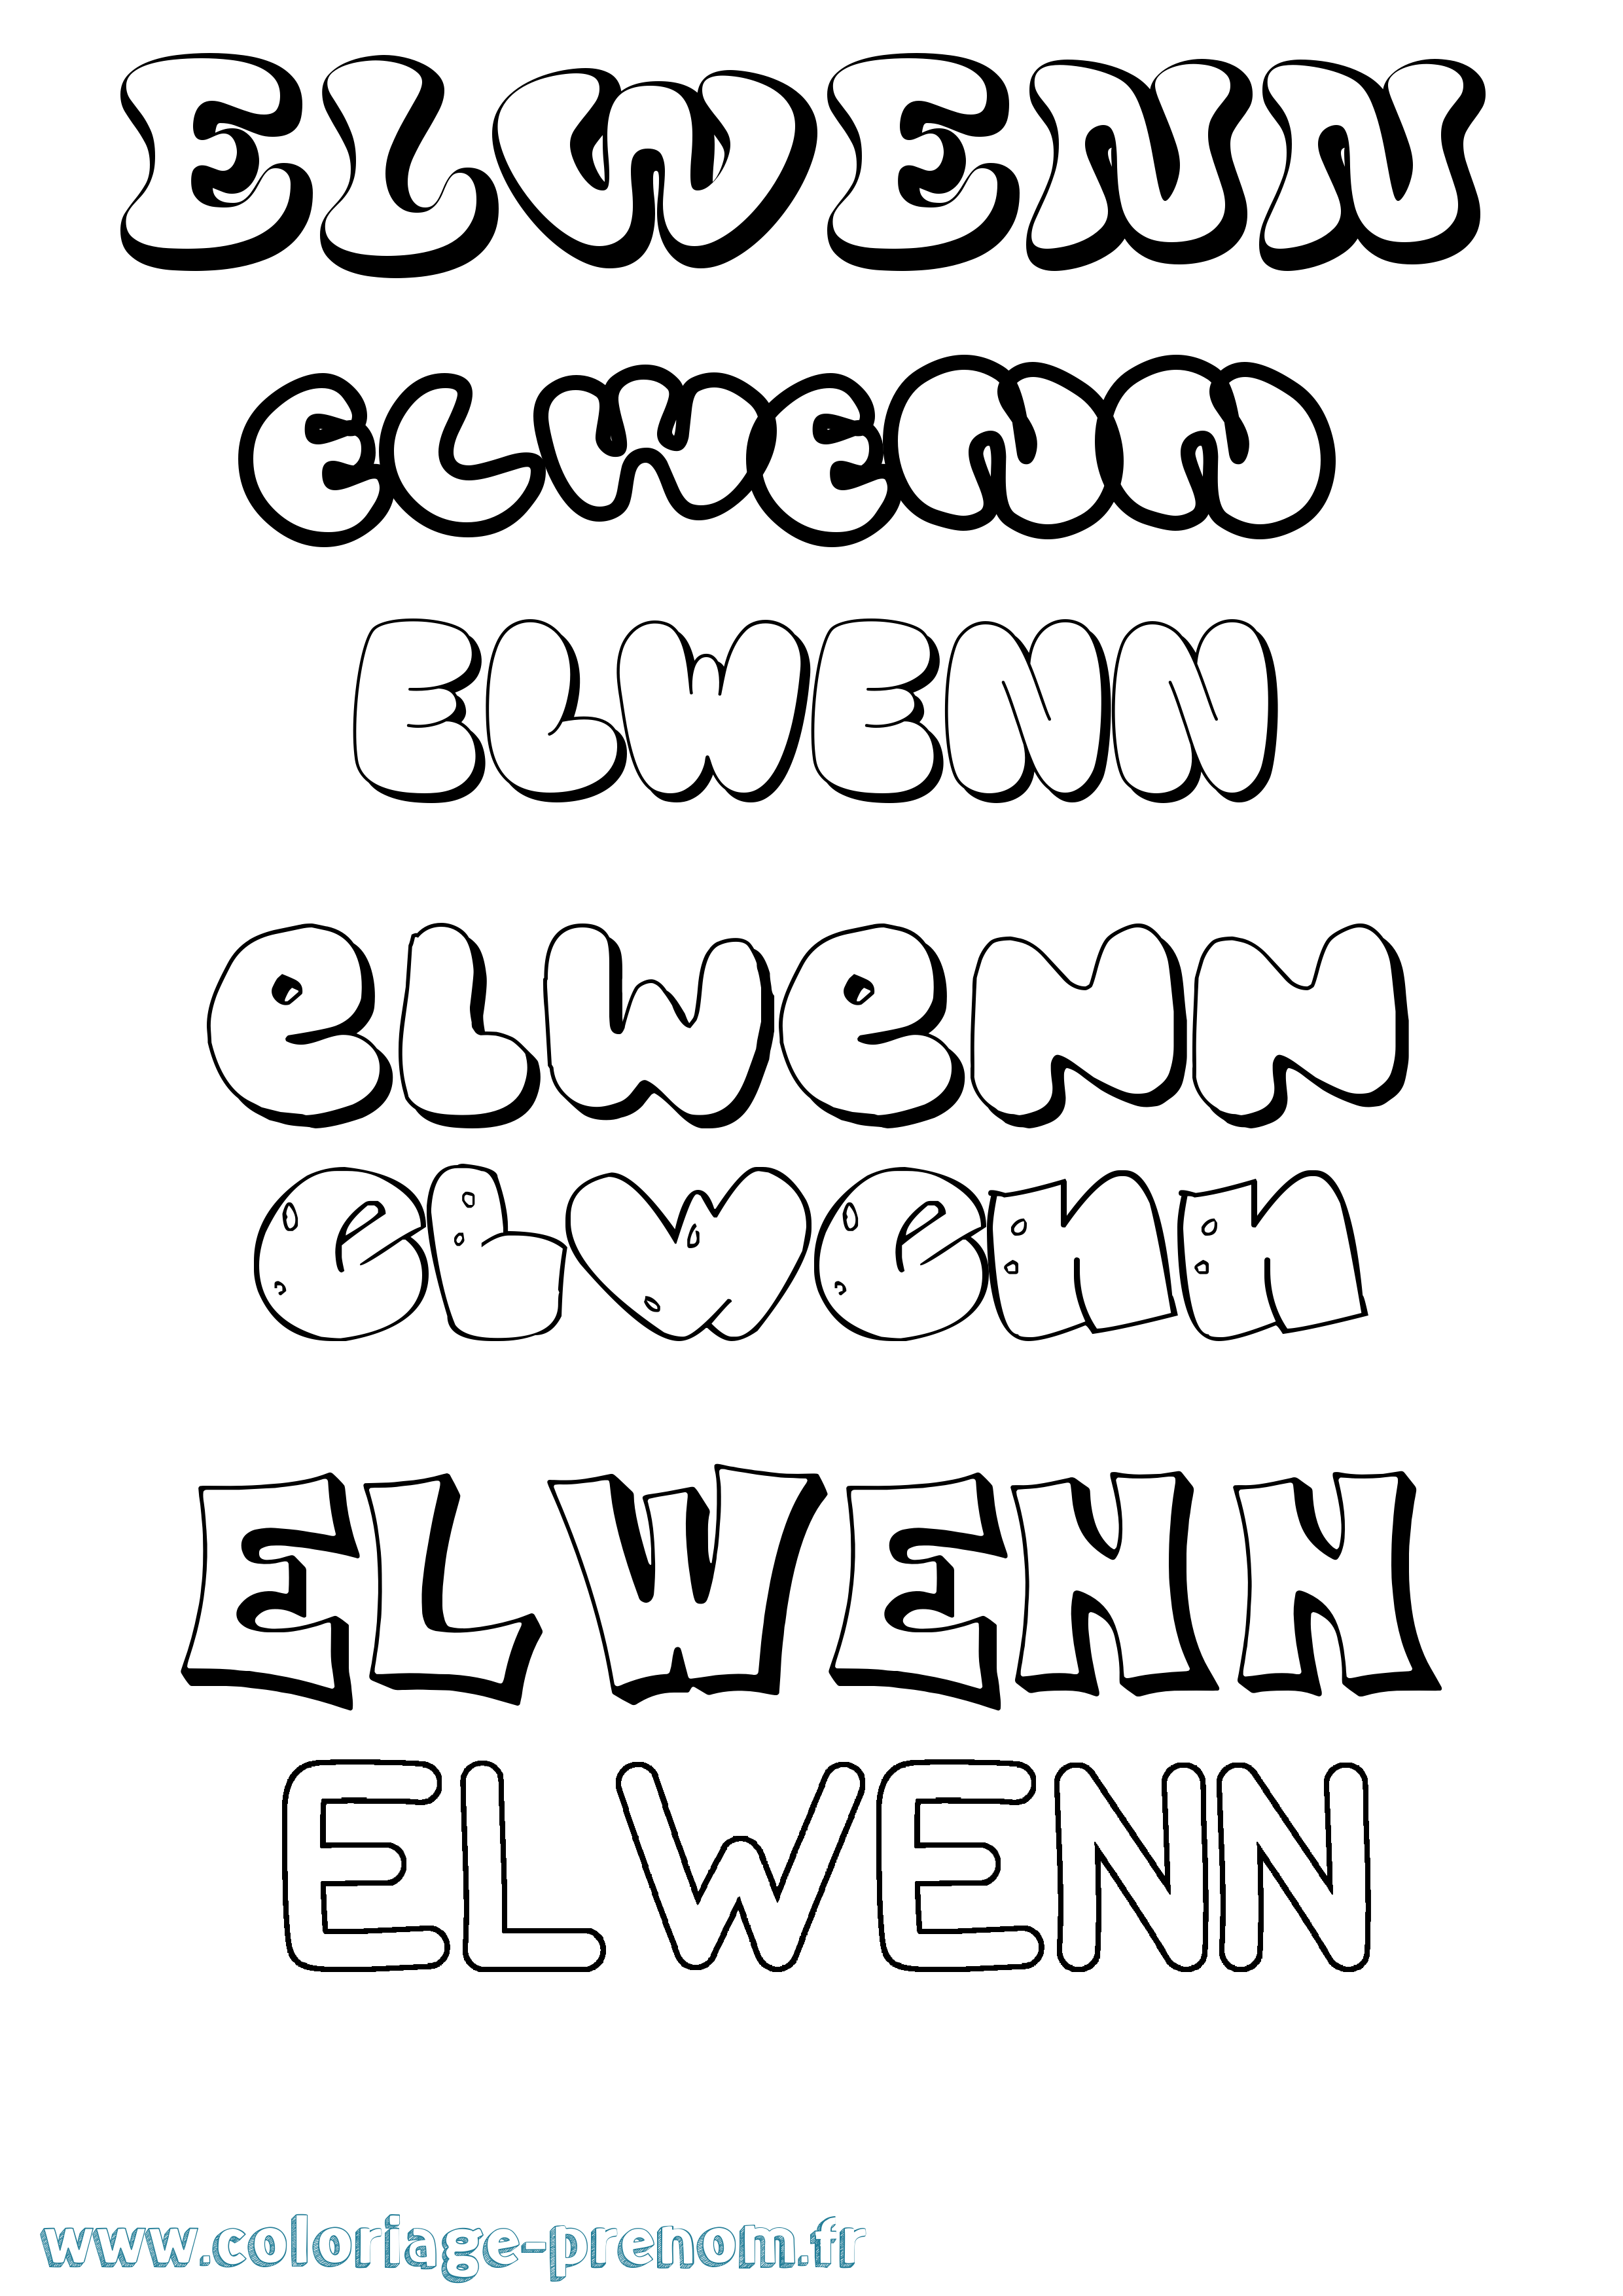 Coloriage prénom Elwenn Bubble